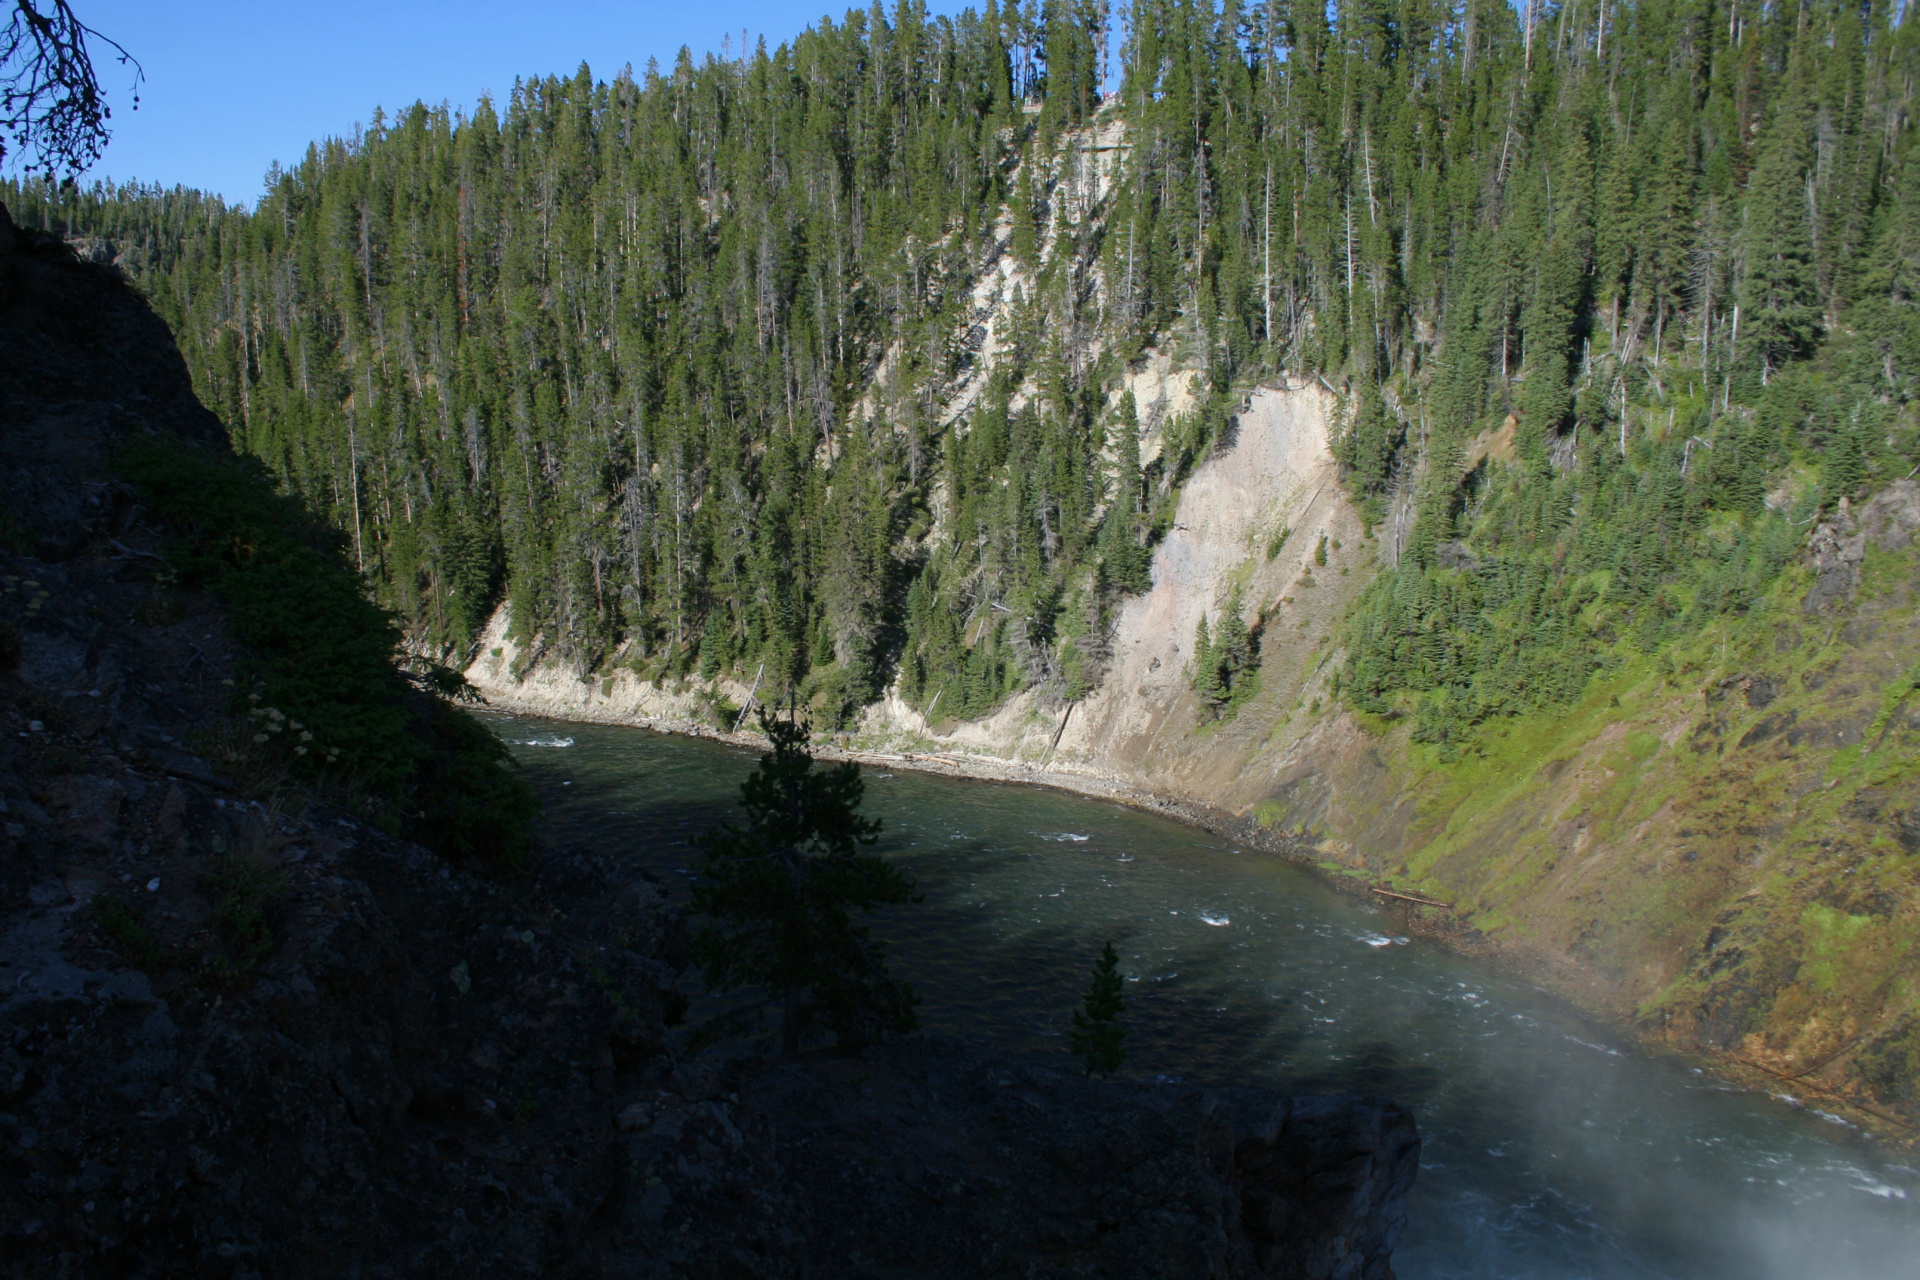 Upper Falls (Podróże » USA: Na ziemi Czejenów » Wielka Podróż » Park Narodowy Yellowstone » Wodospady)